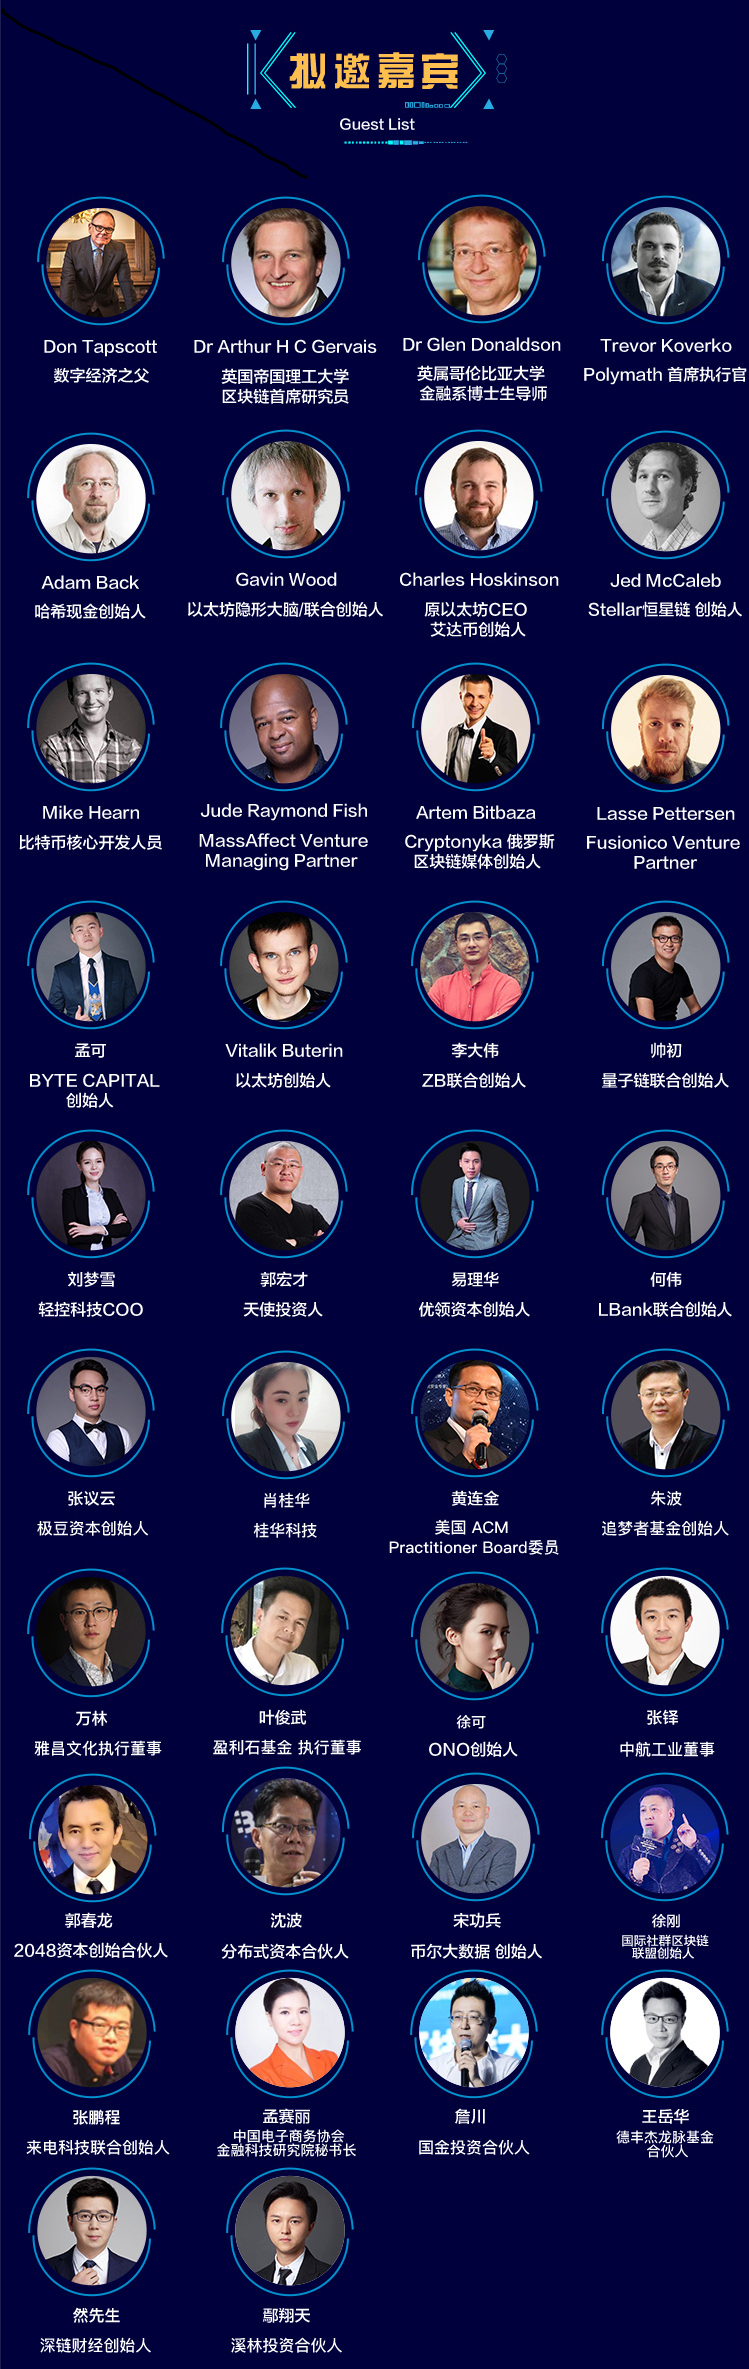 2018首届全球区块链领袖峰会